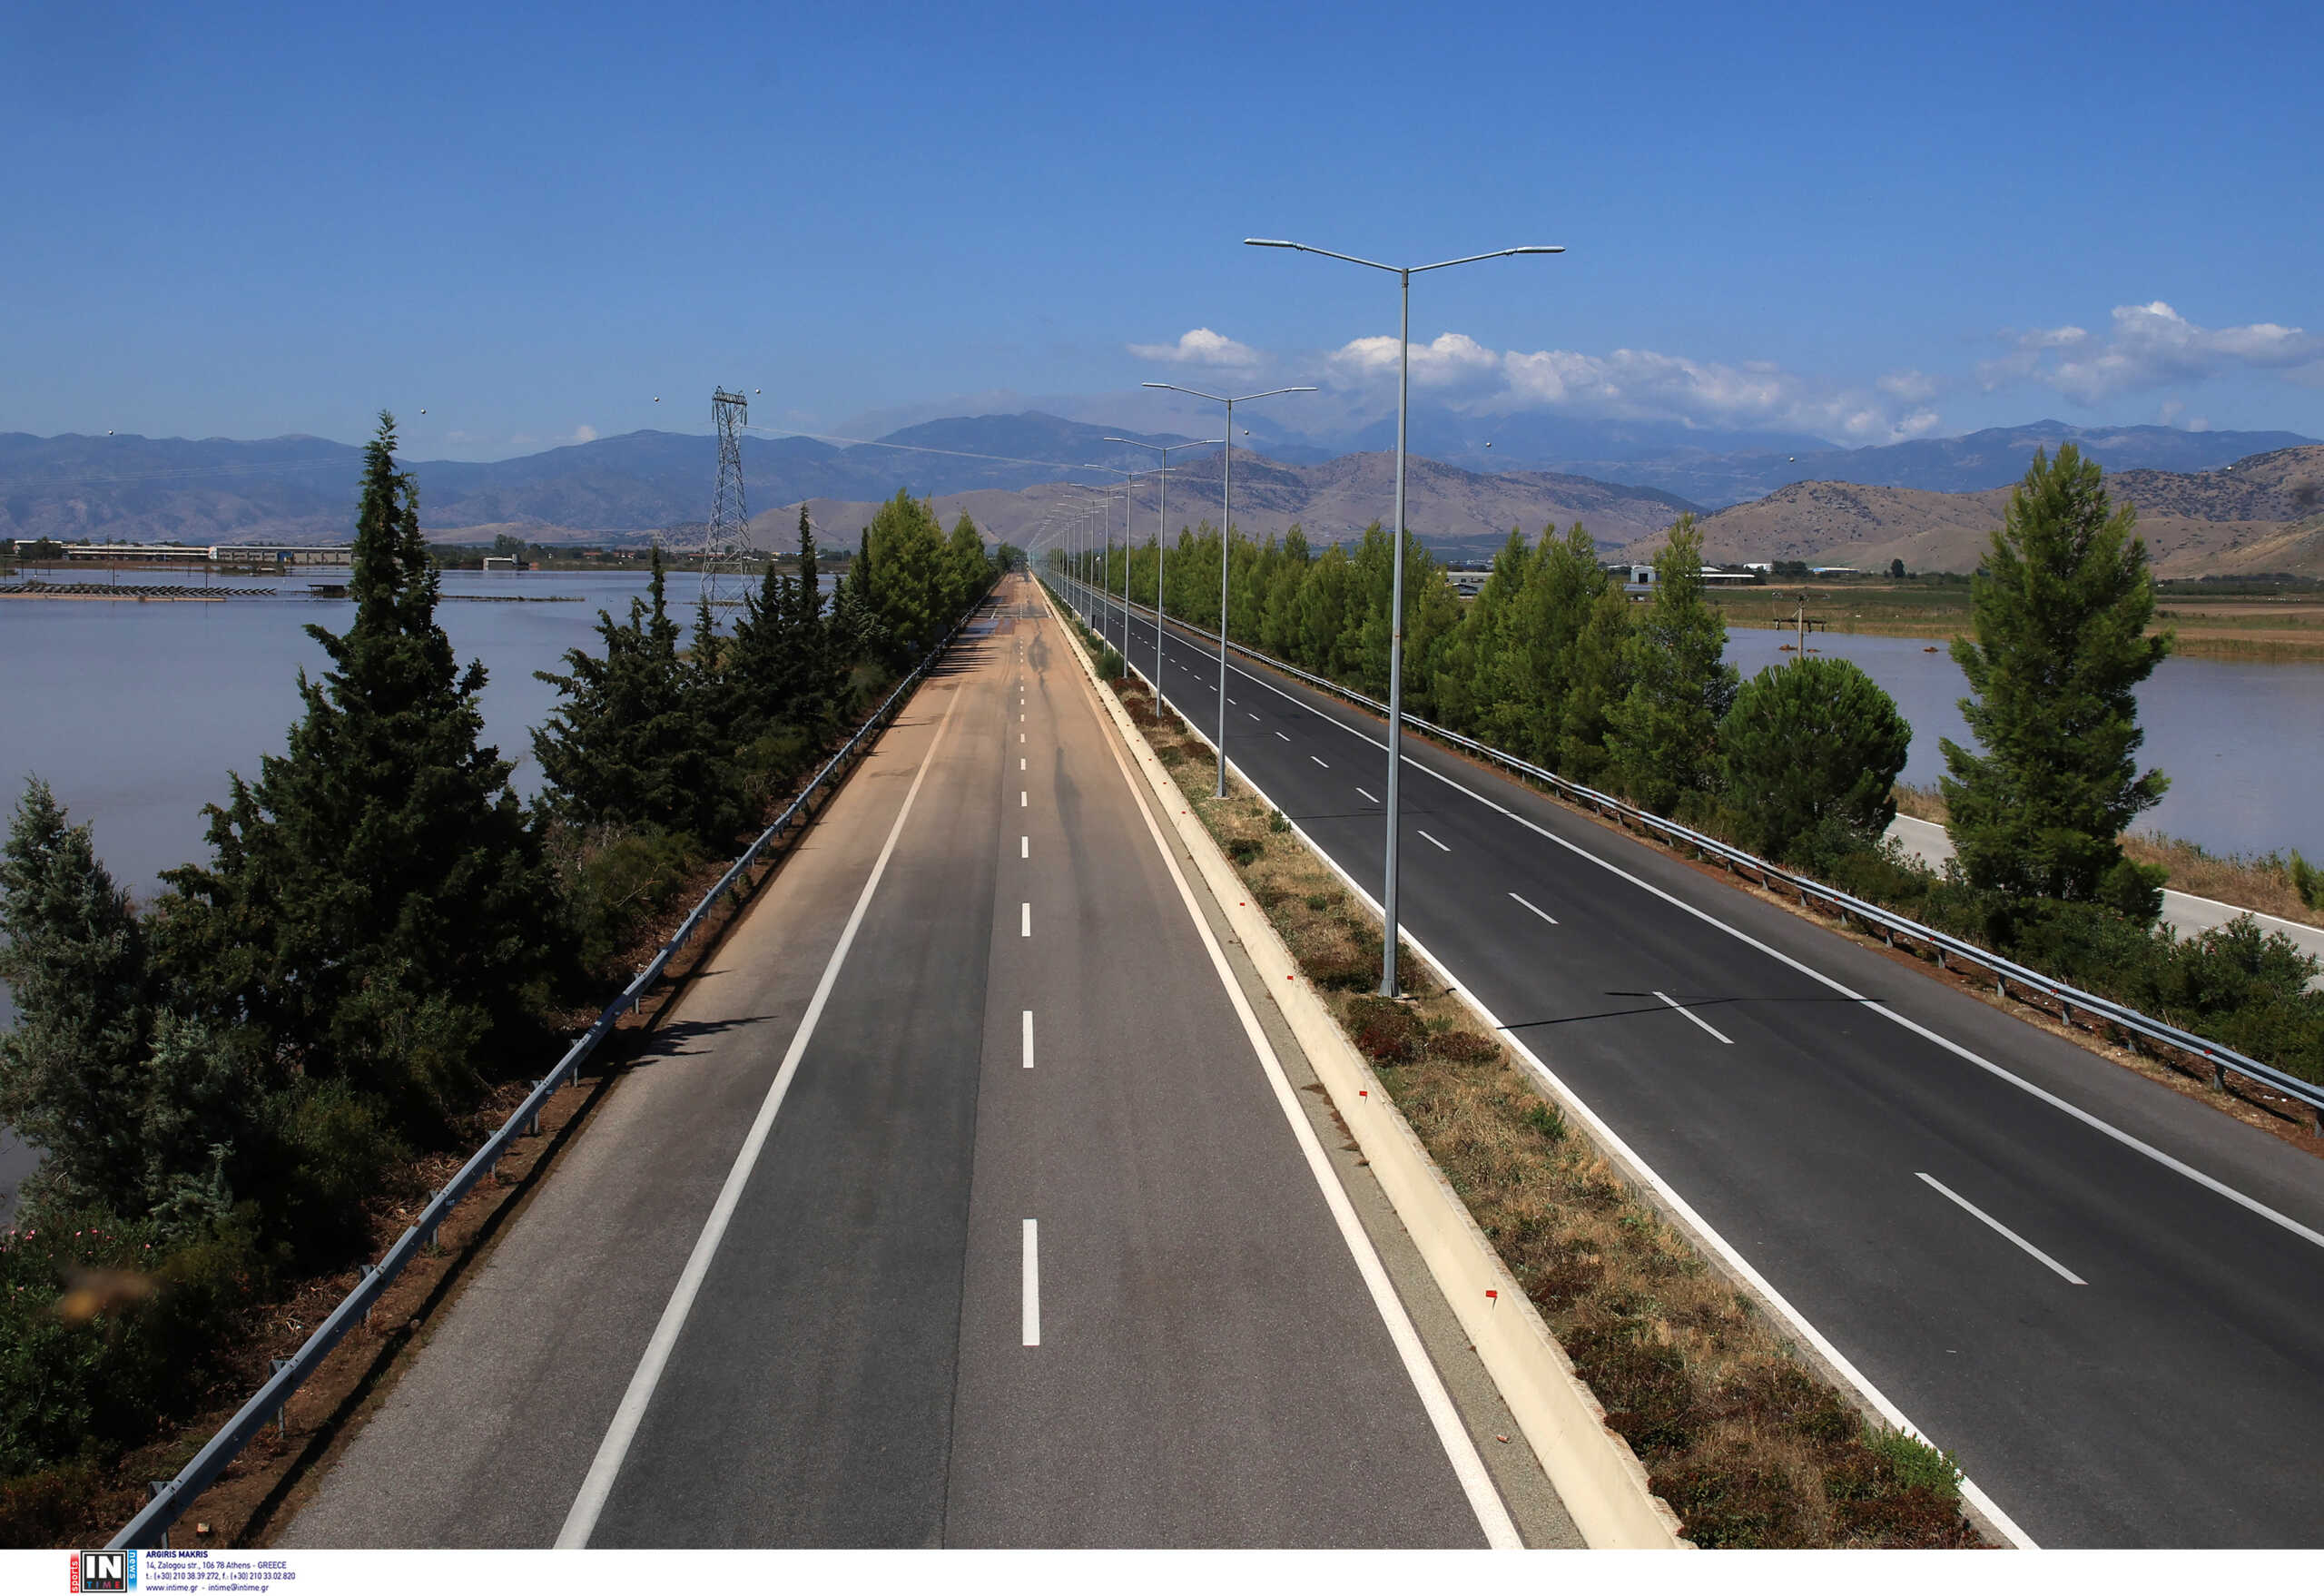 Άνοιξε η εθνική οδός Αθηνών – Θεσσαλονίκης – Απαγόρευση κυκλοφορίας για τα οχήματα άνω των 3,5 τόνων